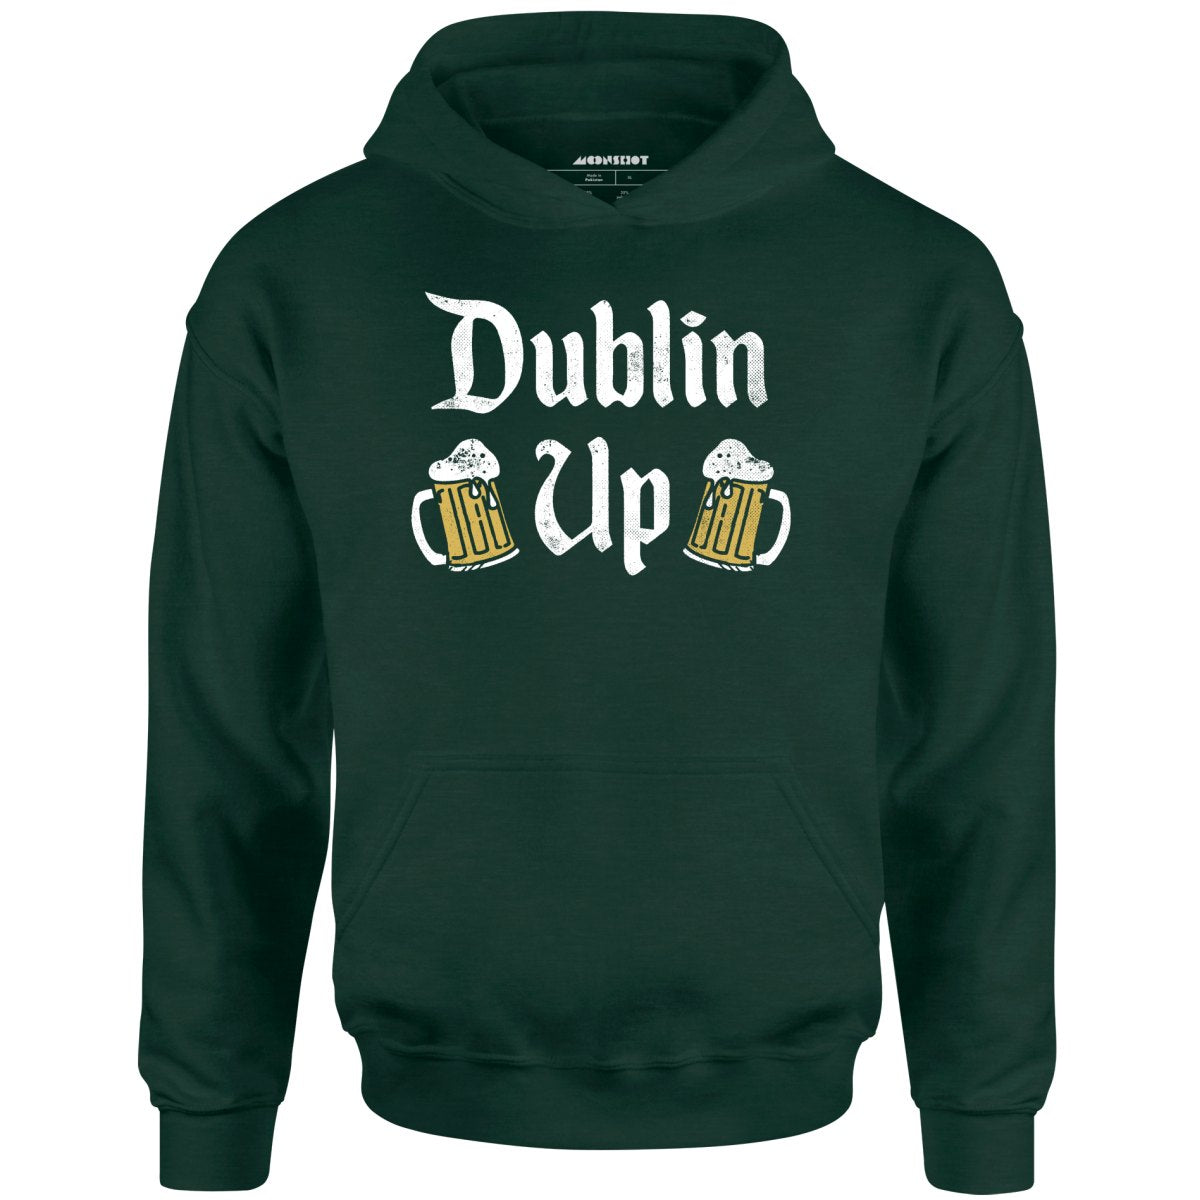 Dublin Up - Unisex Hoodie